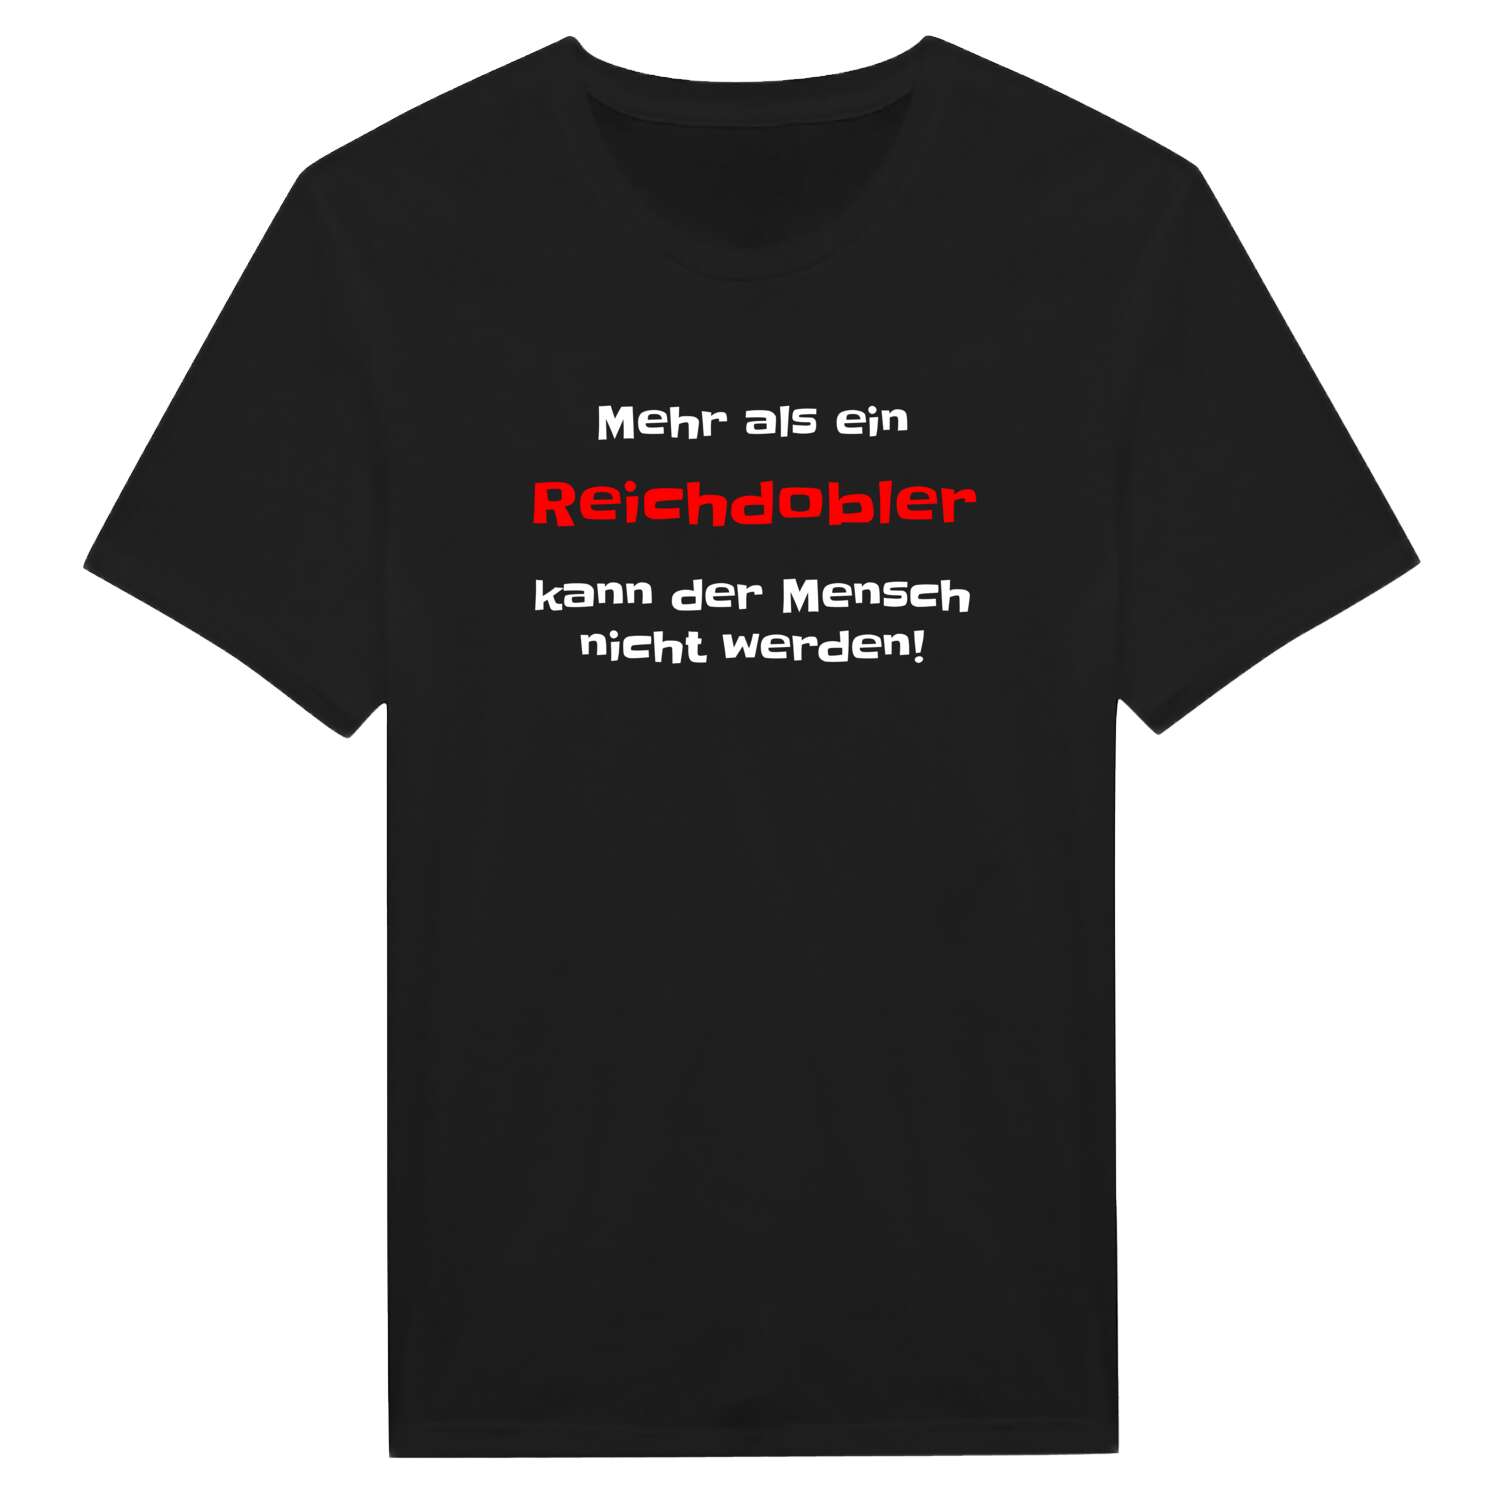 Reichdobl T-Shirt »Mehr als ein«